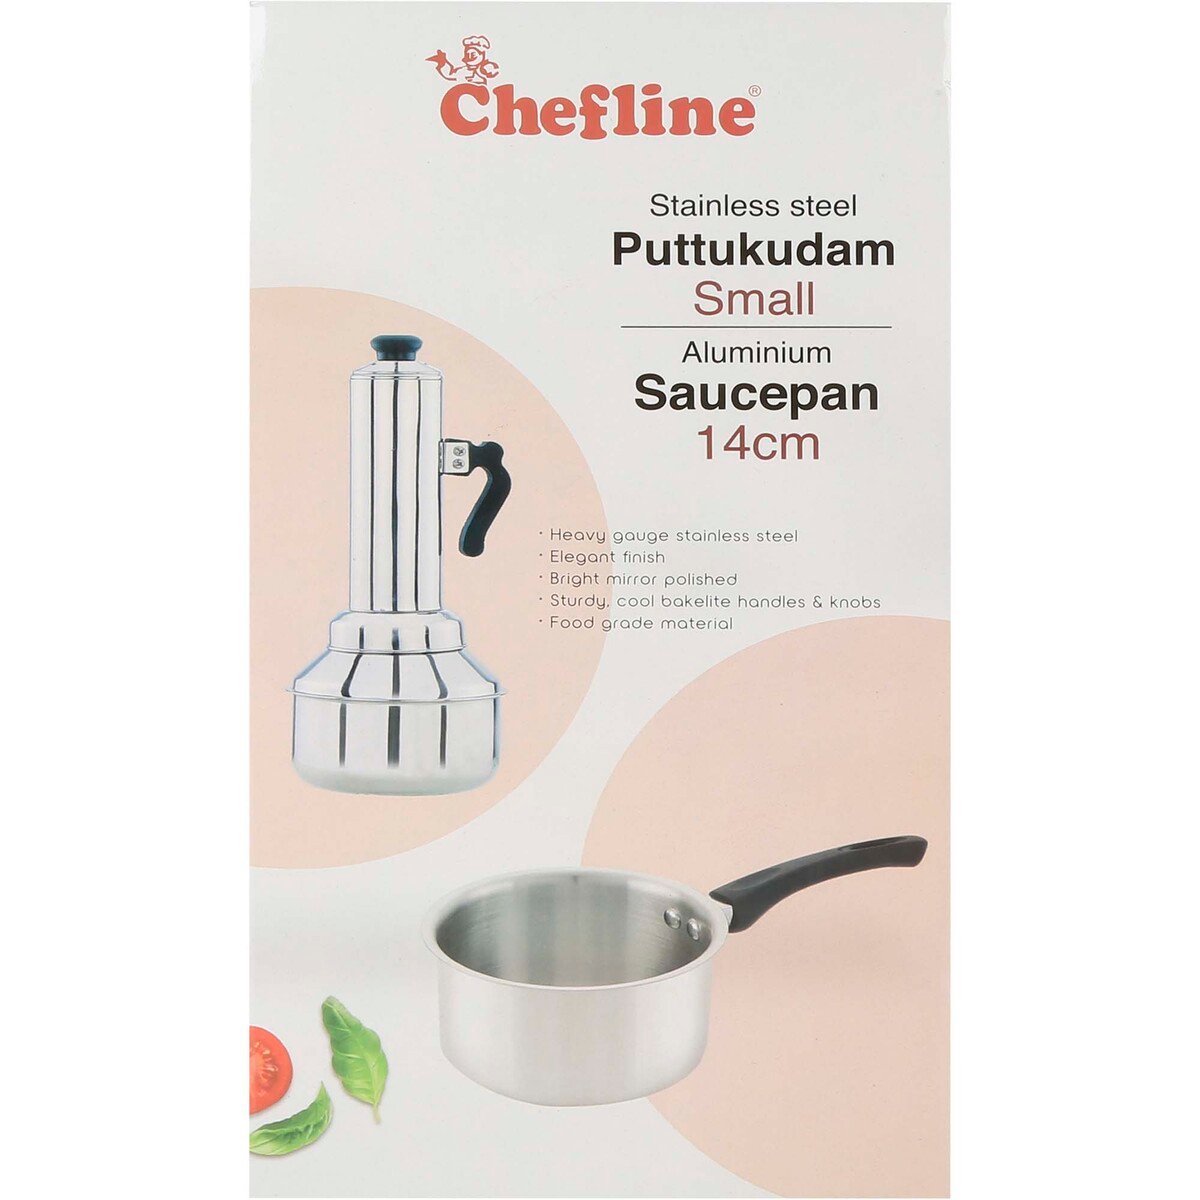 Chefline Stainless Steel Puttu Kudam + Aluminium Saucepan 14cm